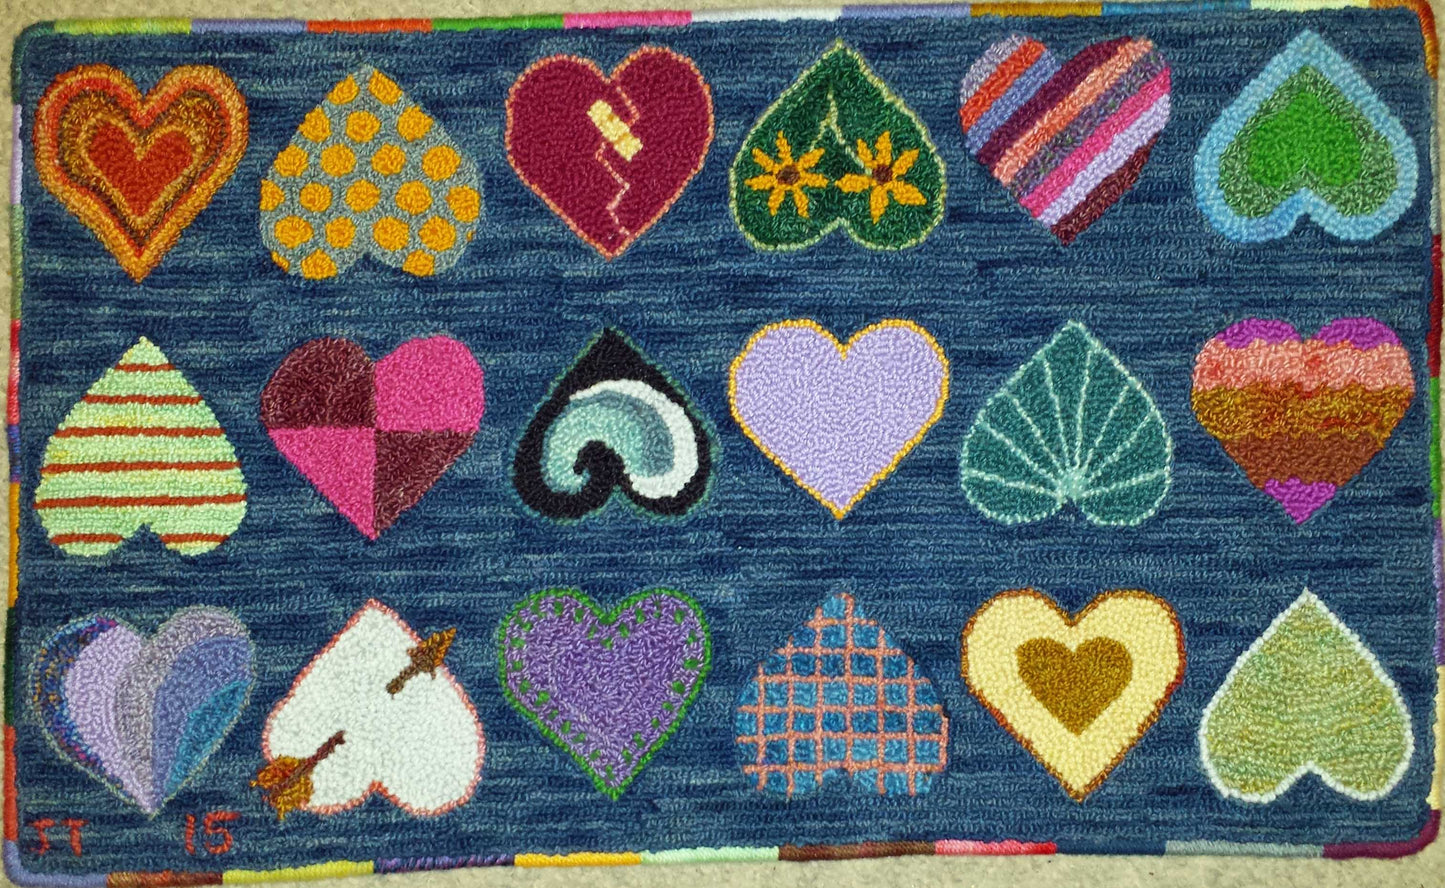 Hearts Rug, 30"x18"